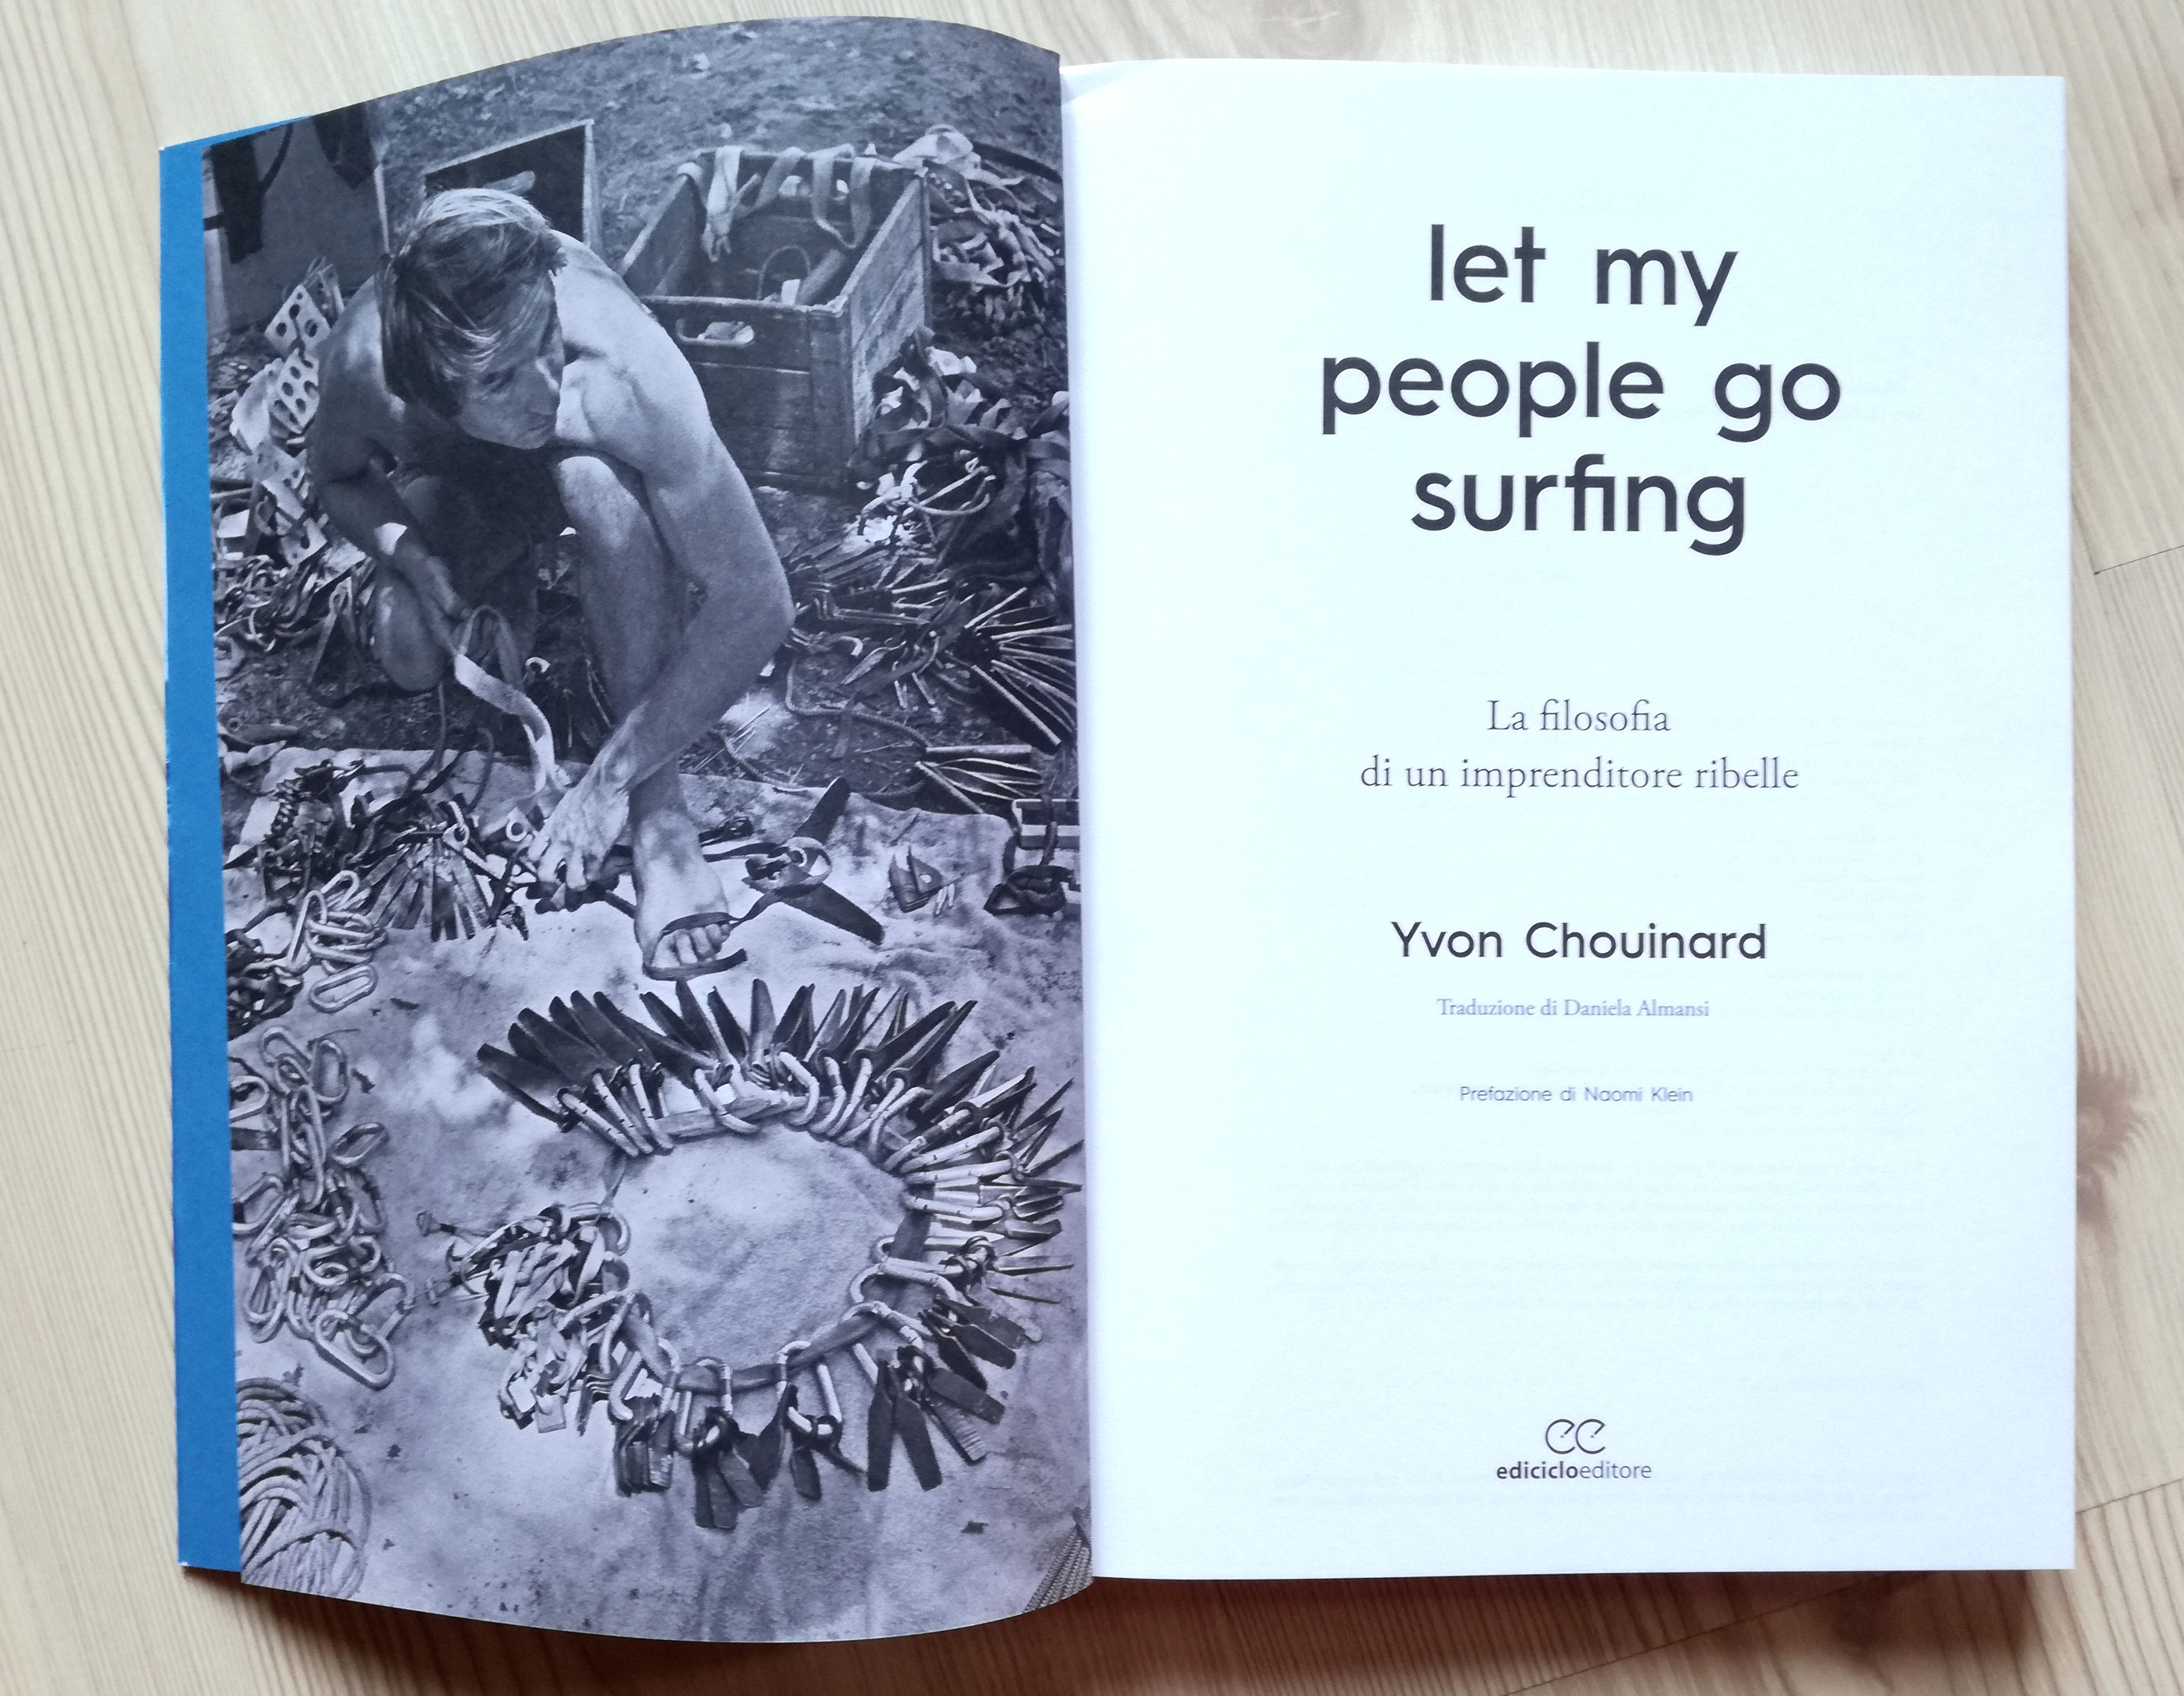 Photo of “Let my people go surfing” il libro che tutti gli imprenditori dovrebbero leggere